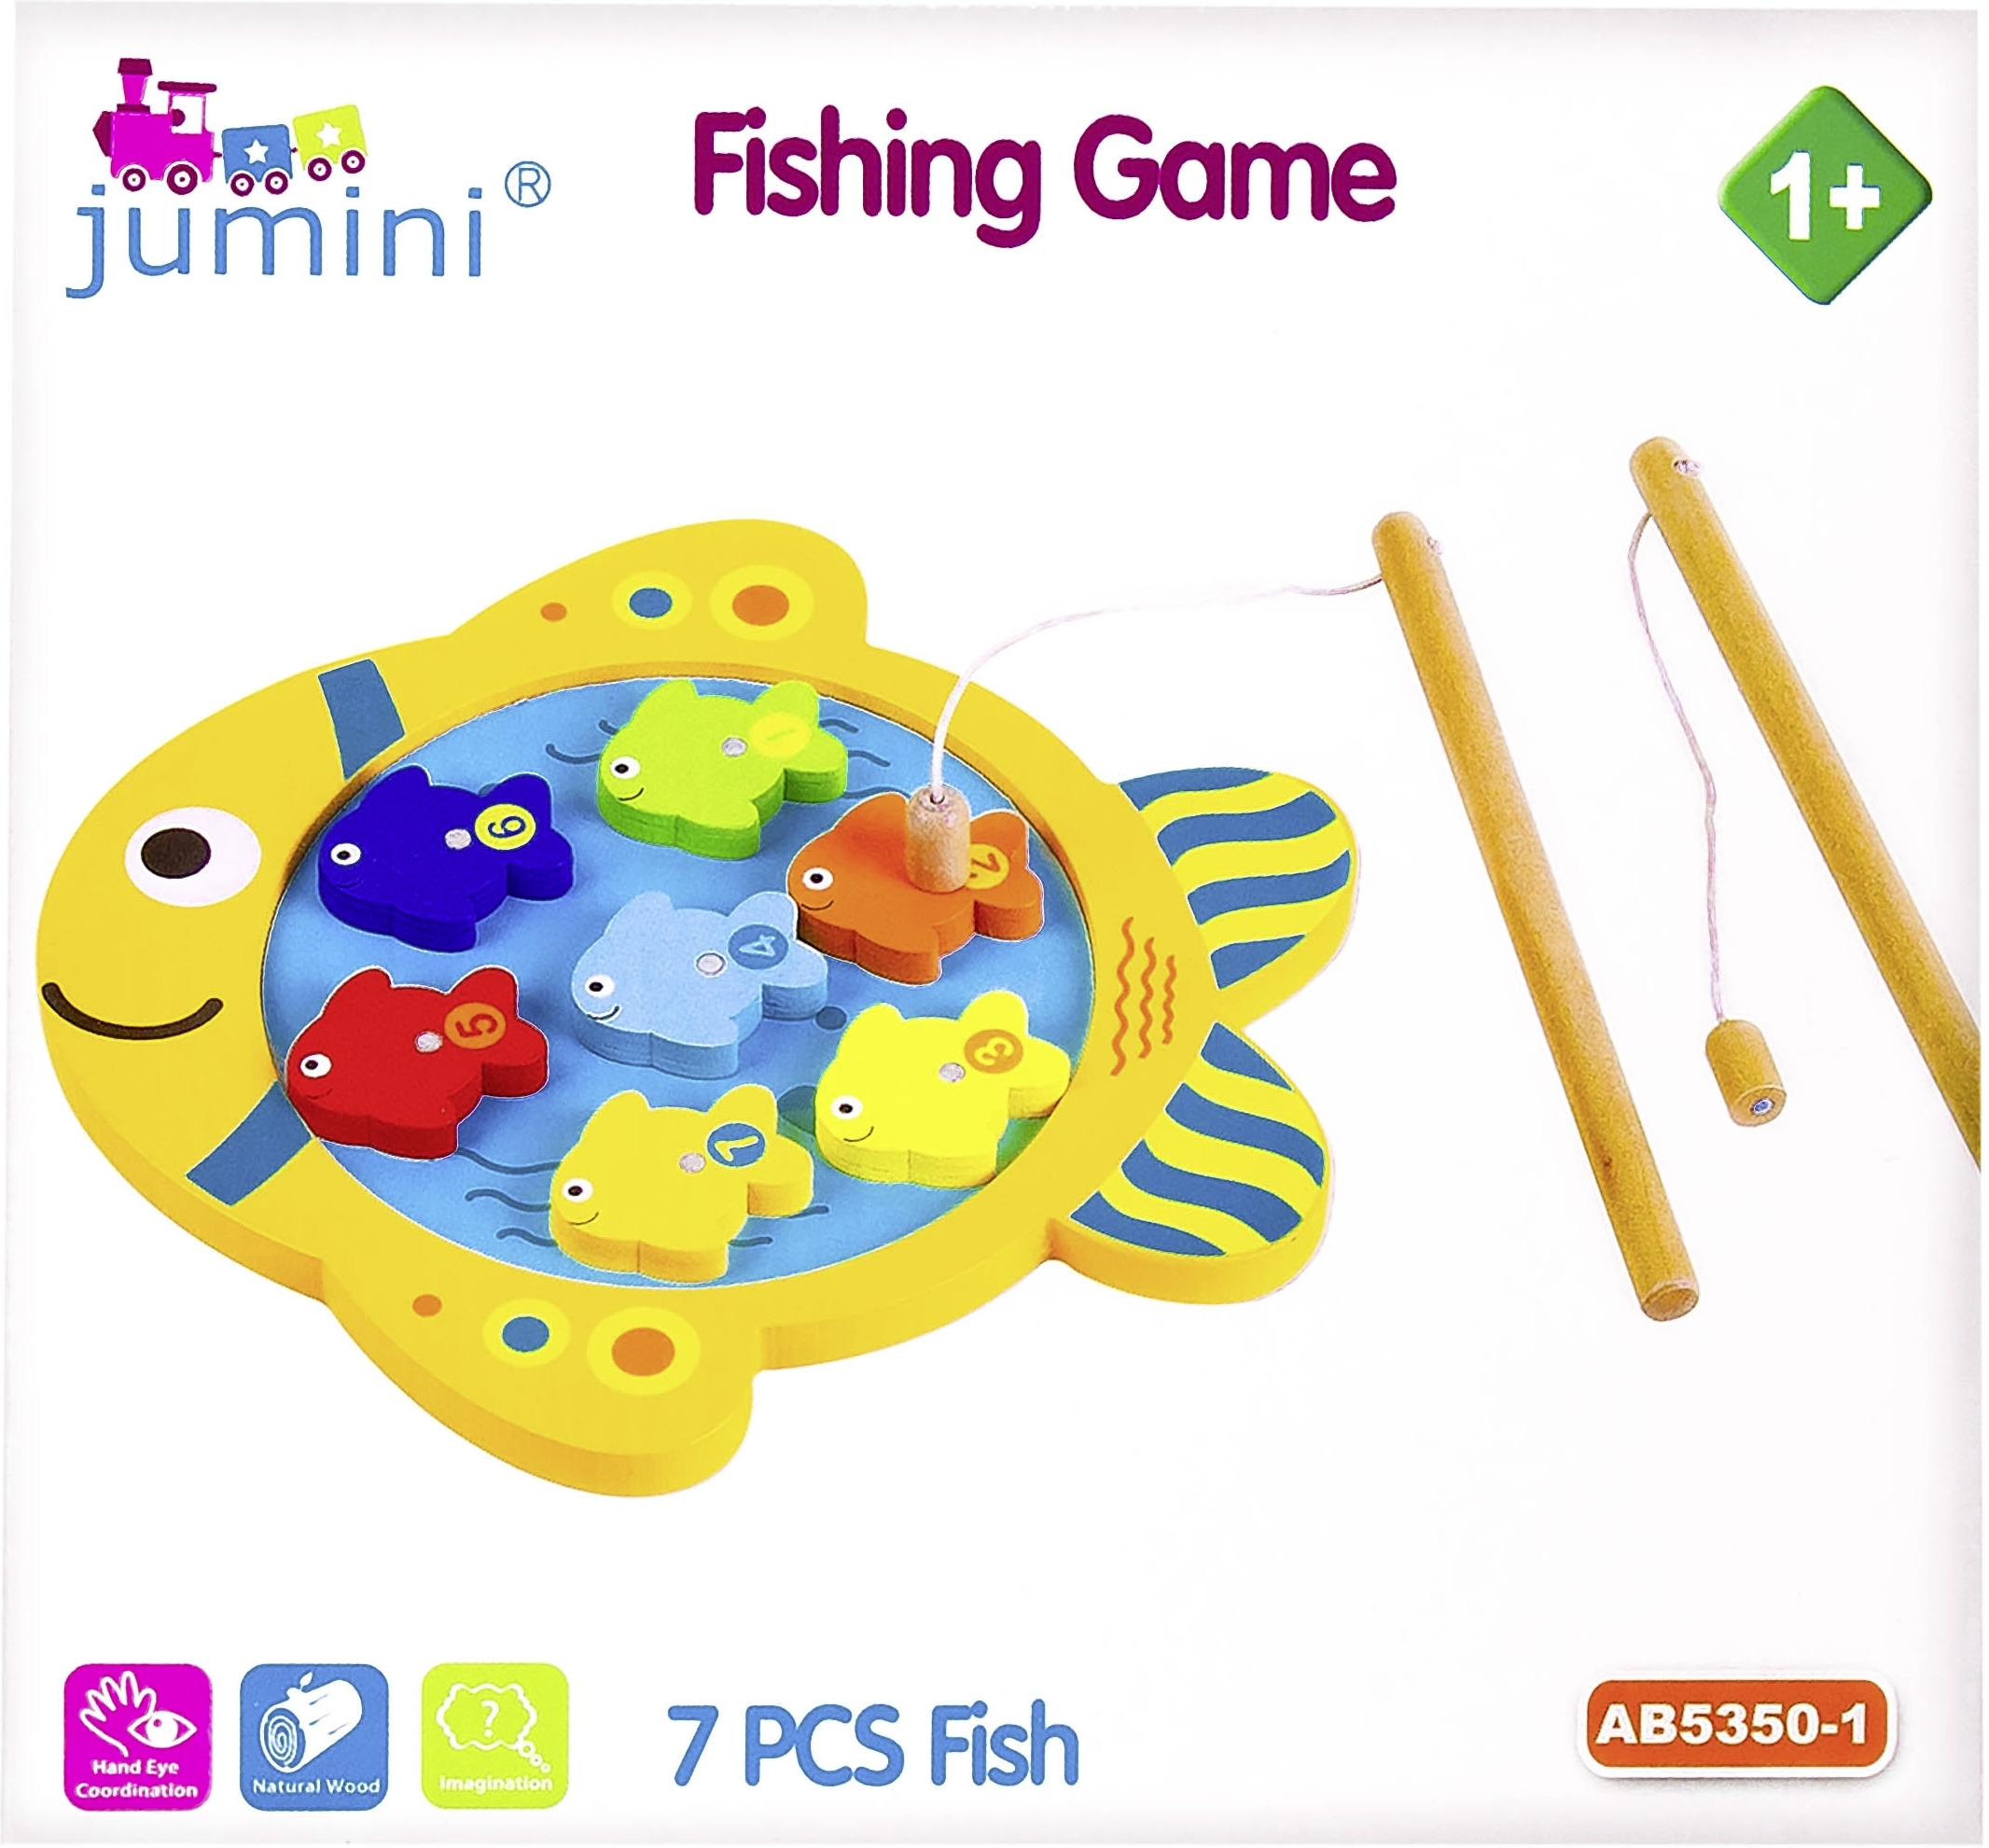 Takaisinveto: Puinen Kalastuspeli (Jumini Fishing Game) - S-ryhmä